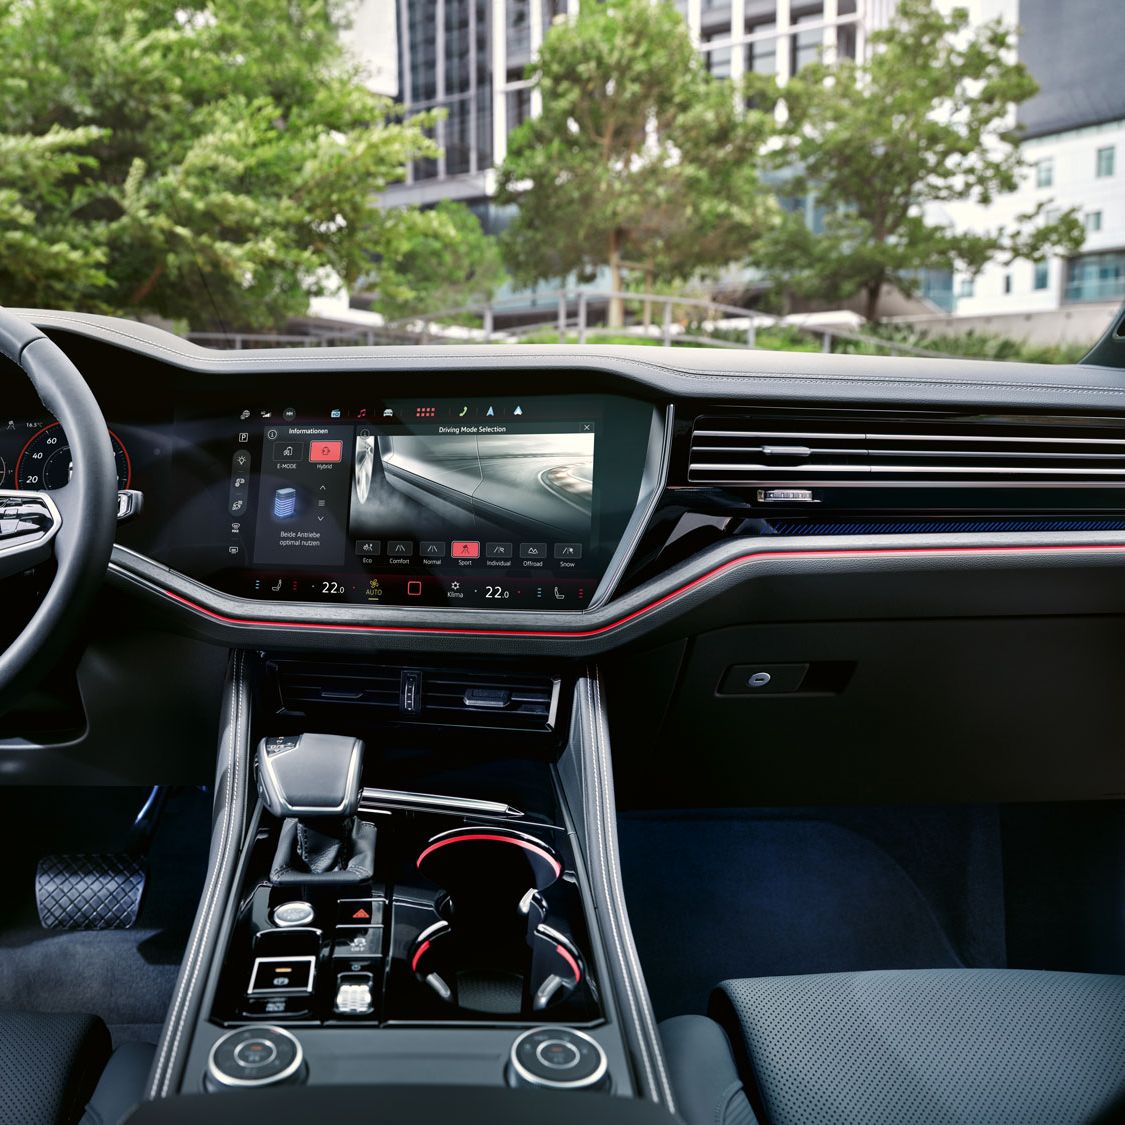 Blick auf das Cockpit im VW Touareg Elegance, auf dem Bildschirm ist die Einstellung des Fahrprofils zu sehen.